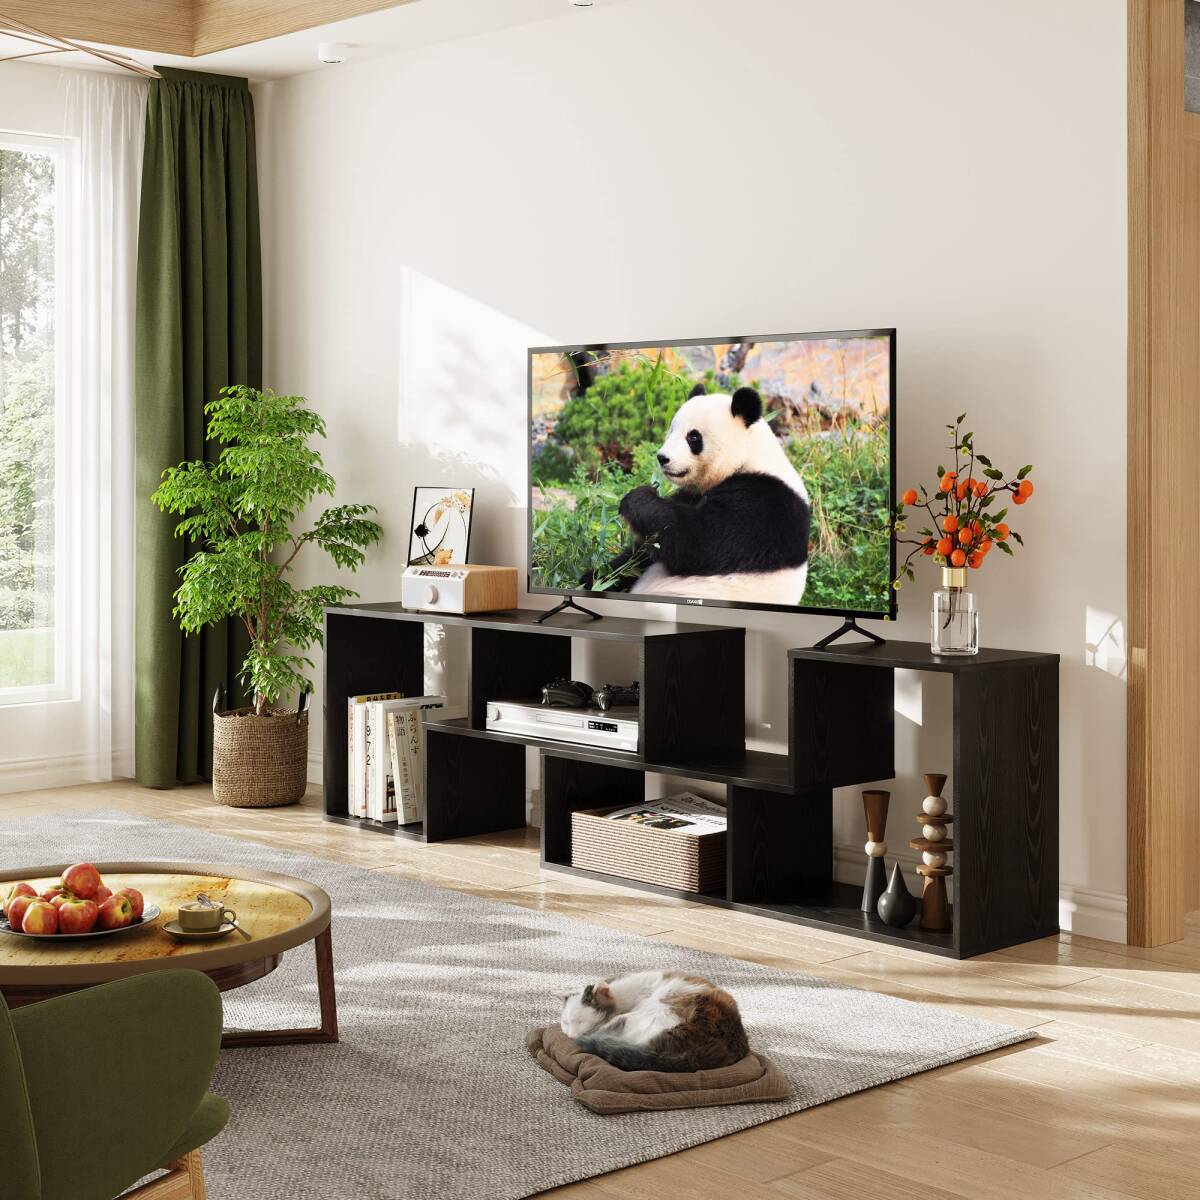 テレビ台 ラック テレビボード 高品質 安全設計 操作簡単 3選択可能_画像3